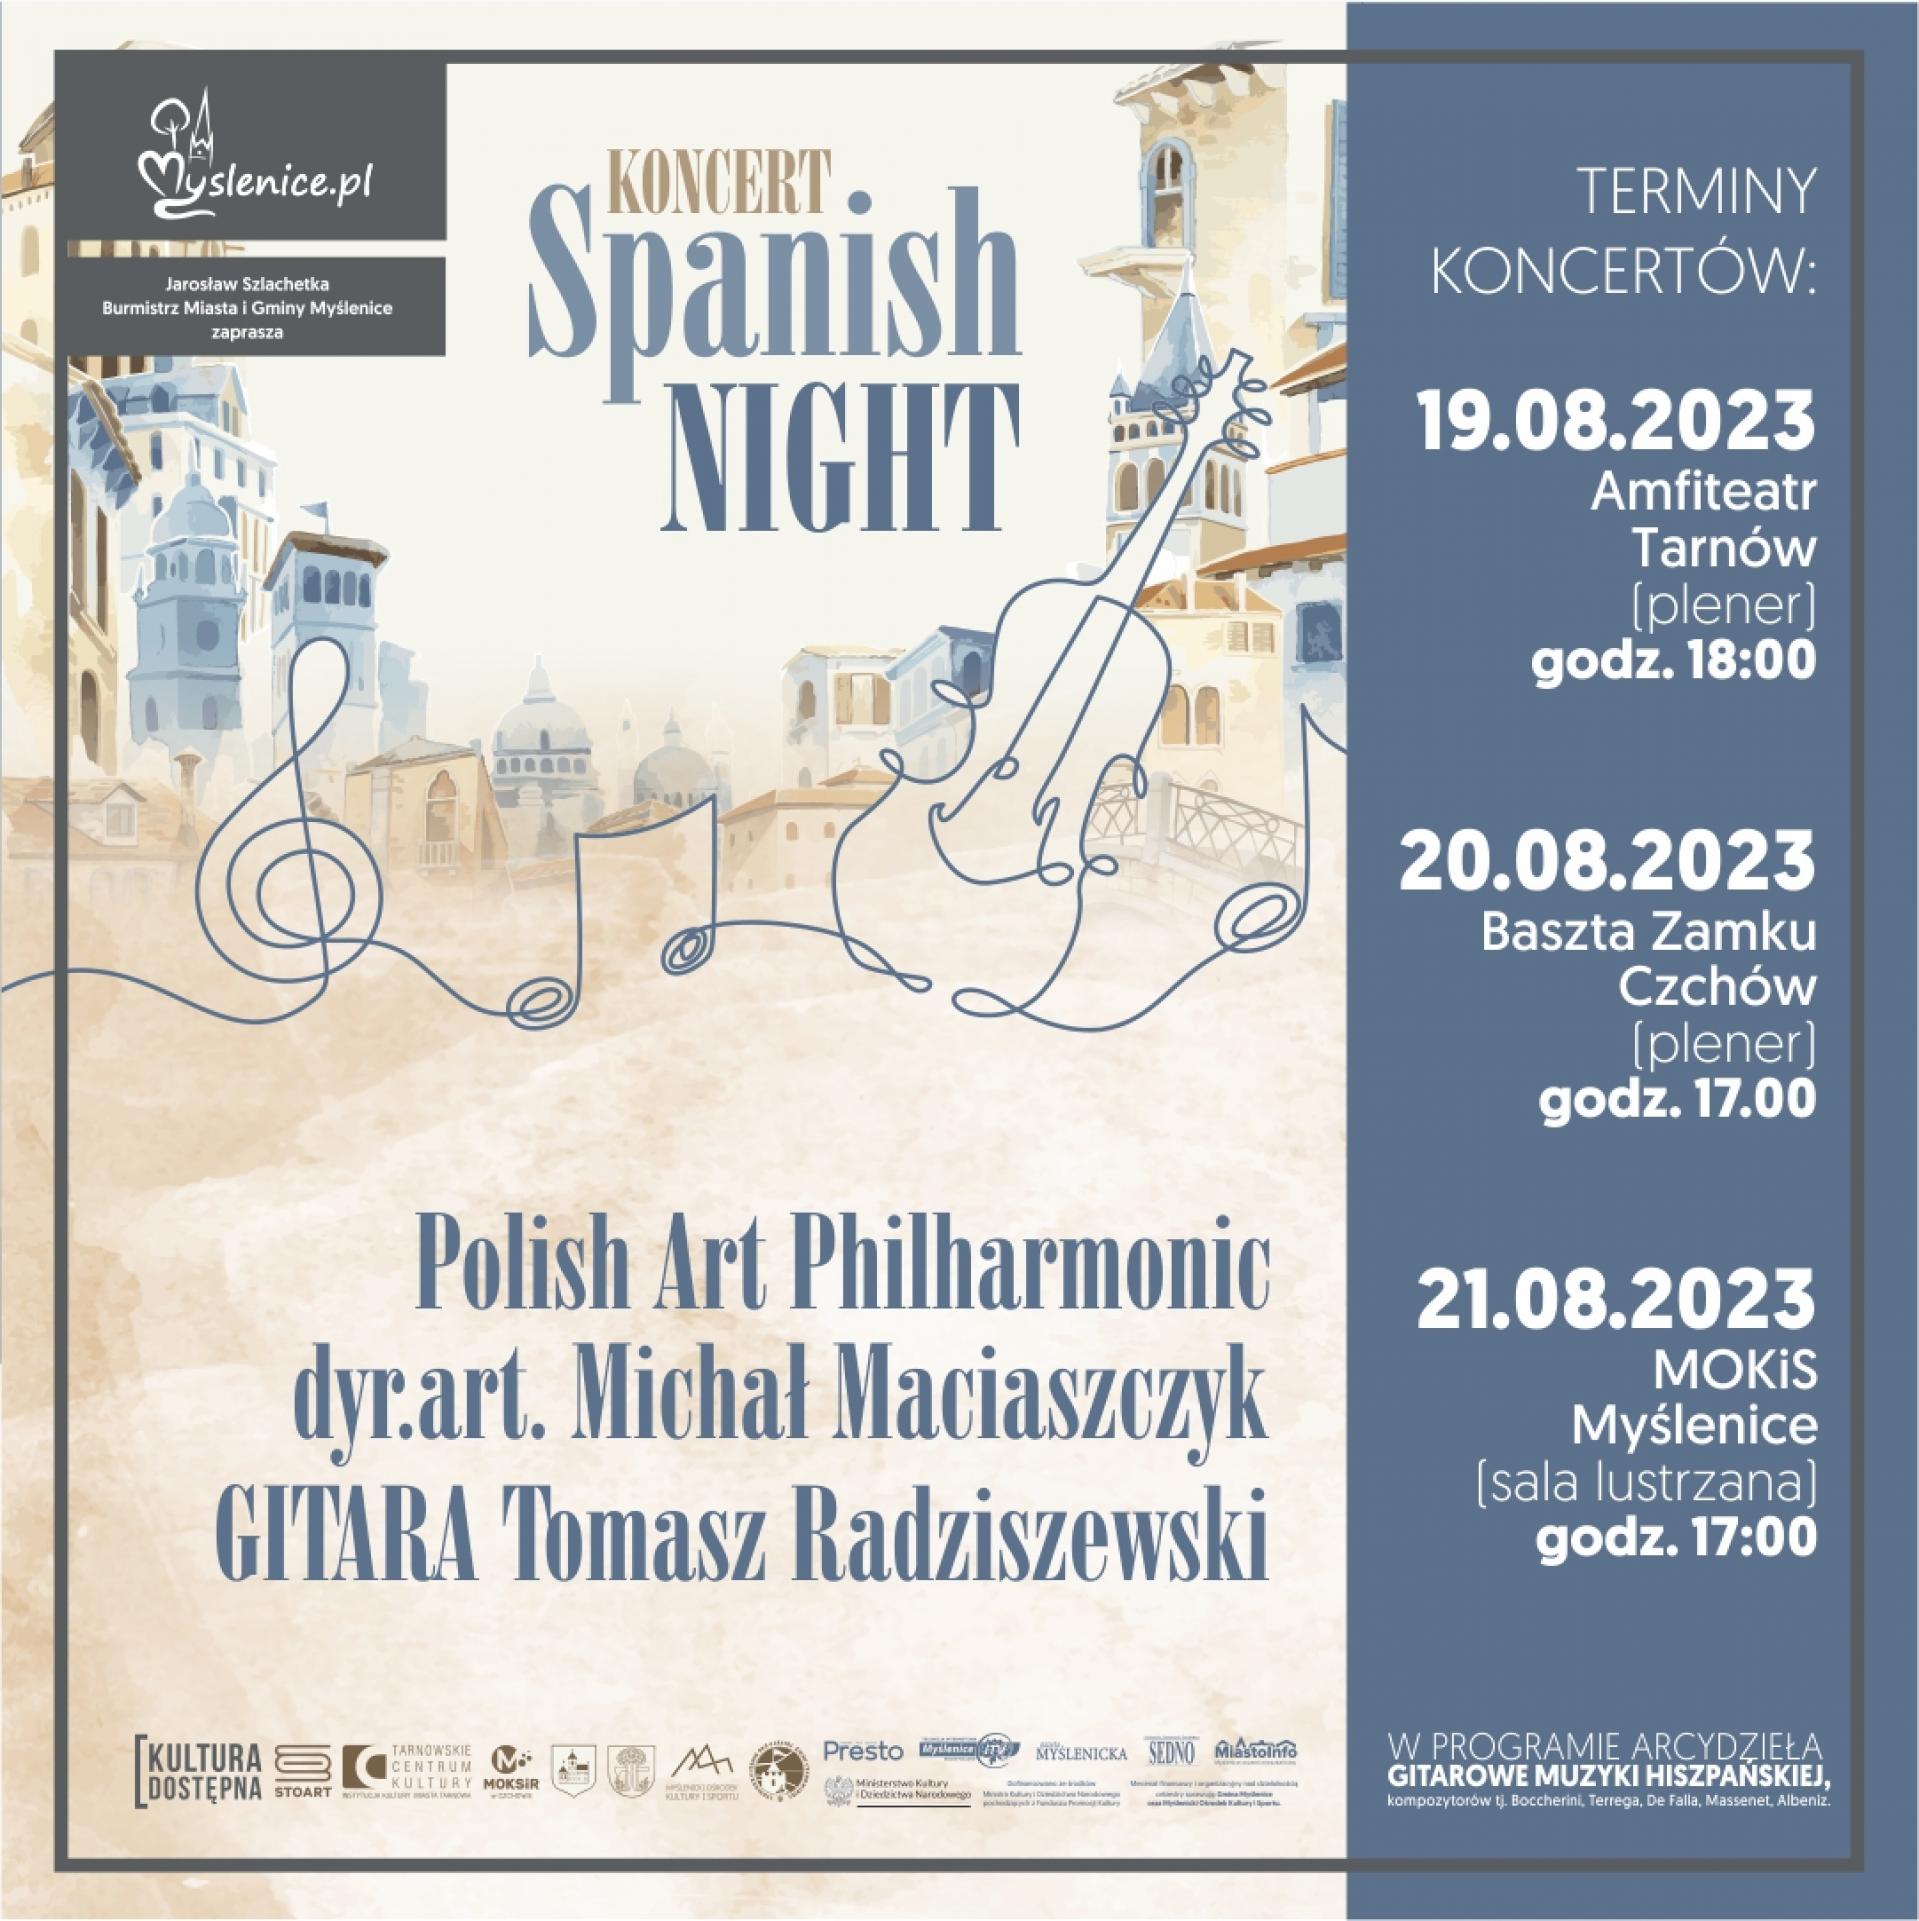 Polish Art Philharmonic - jeden z Koncertów Spanish night  już 21 sierpnia w naszym Ośrodku Kultury